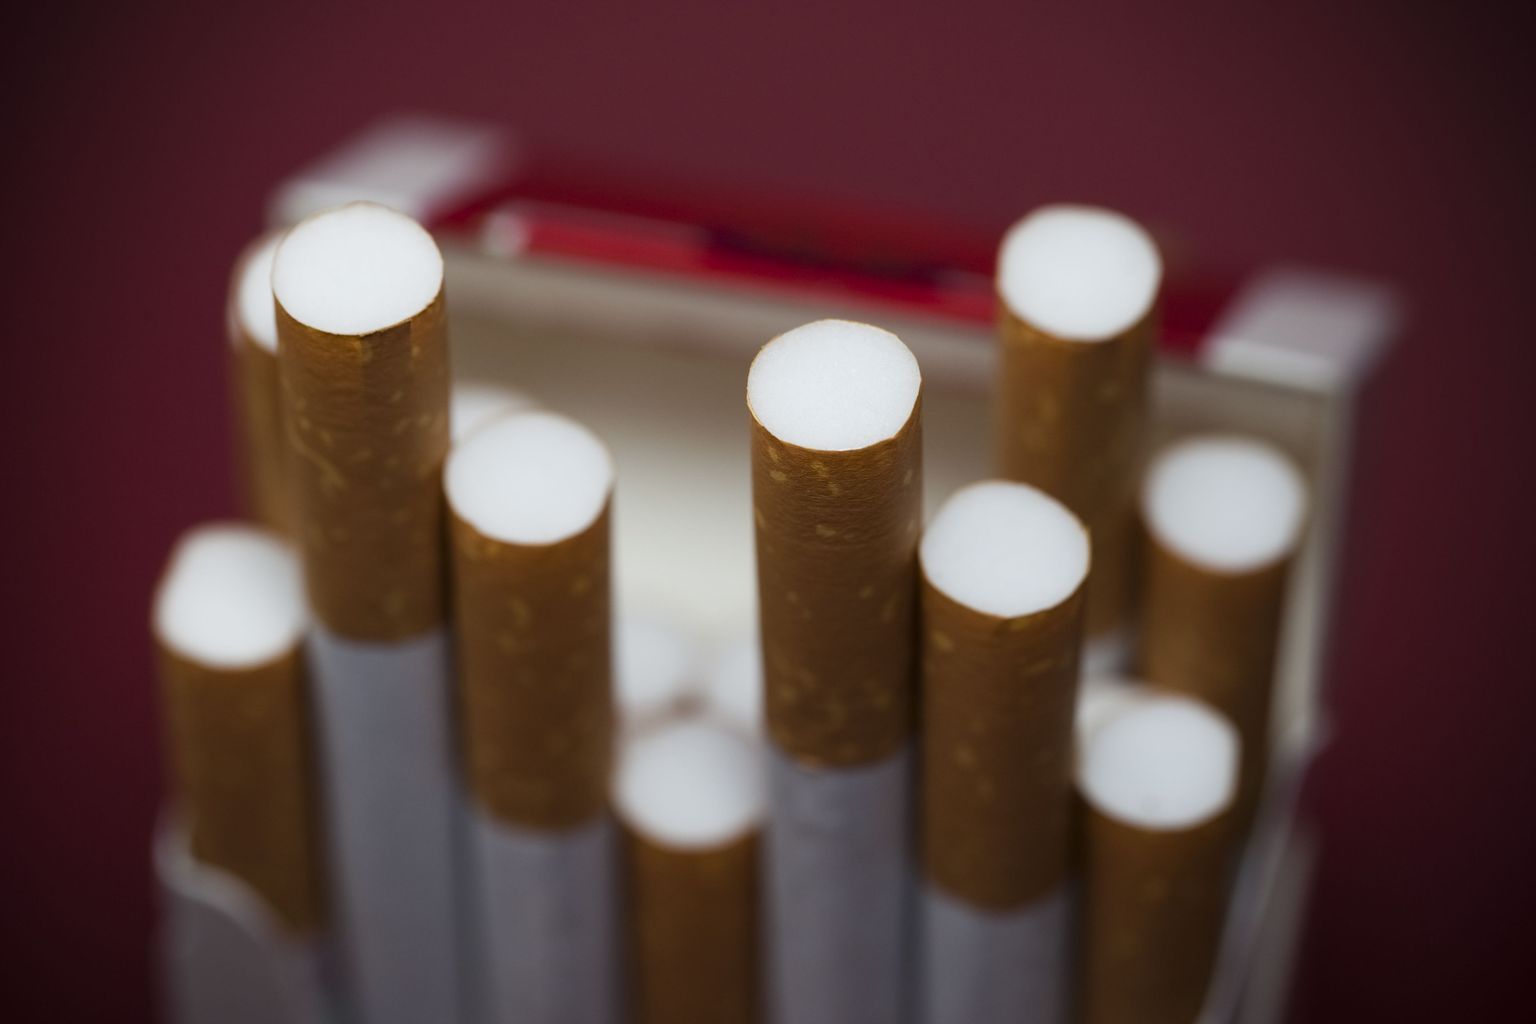 Ühe muudatusena toob uus eelnõu müüjatele kohustuse kahtluse korral tubakatoote ostjalt dokumenti küsida.